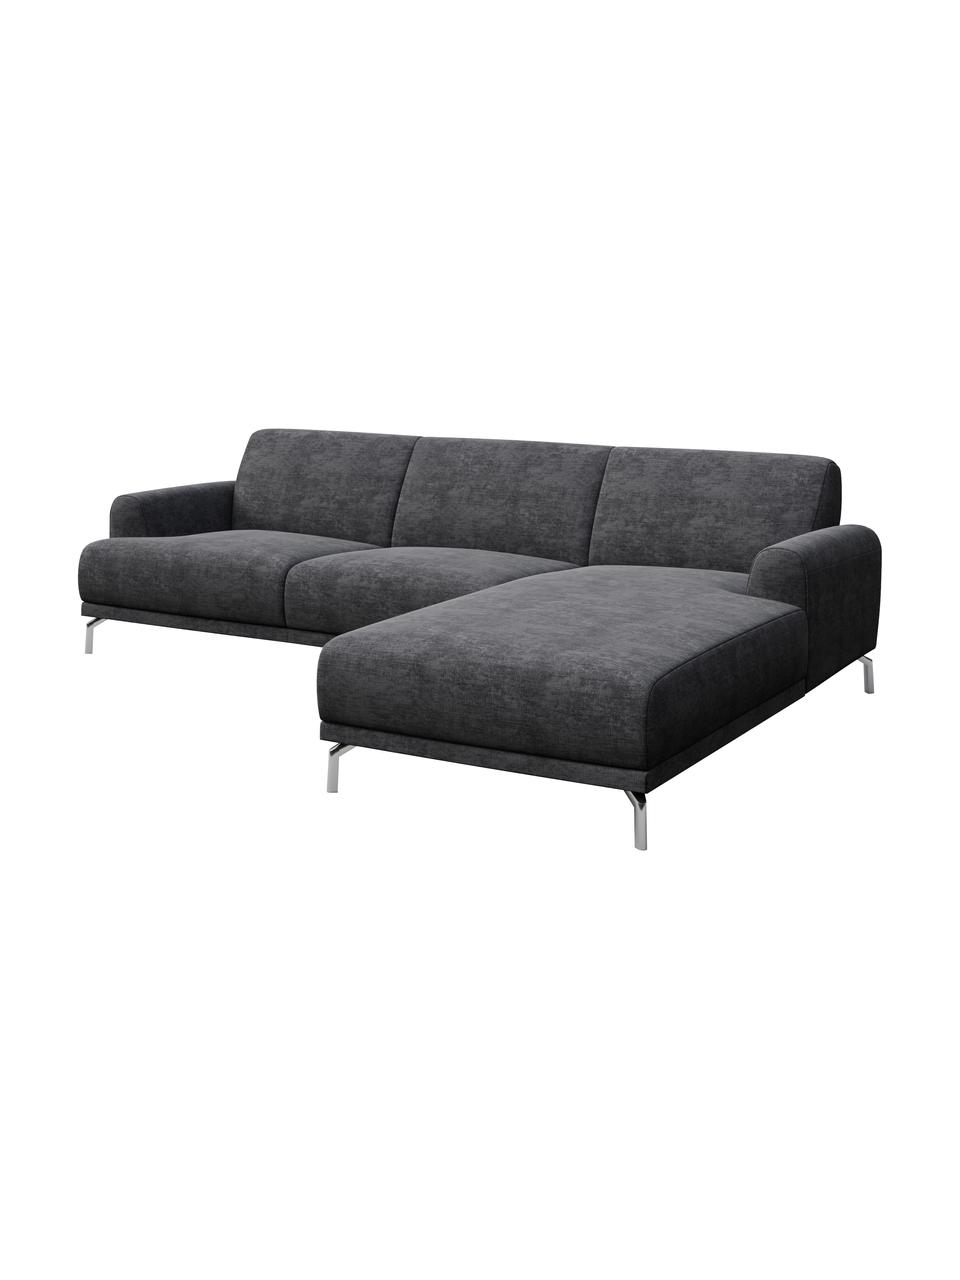 Sofa narożna z Zero Spot System Puzo, Tapicerka: 100% poliester z Zero Spo, Nogi: metal lakierowany, Ciemny szary, S 240 x G 165 cm